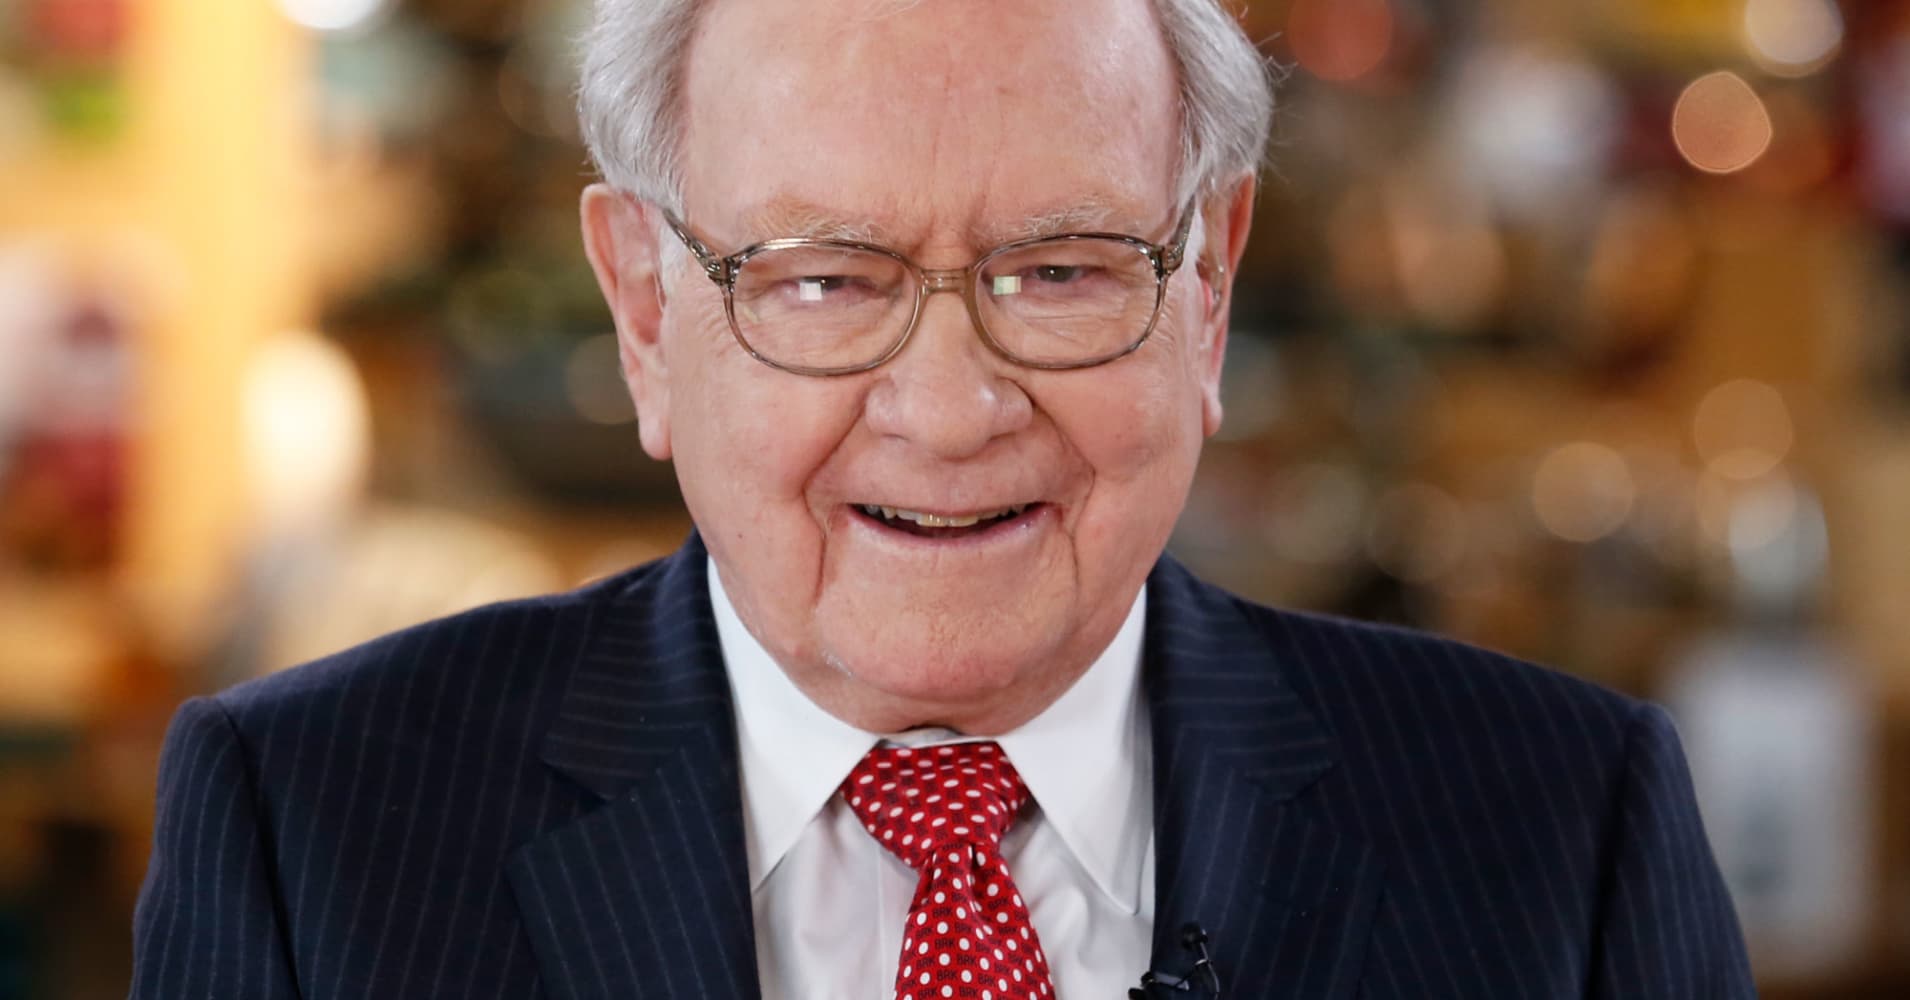 How Warren Buffett measures success